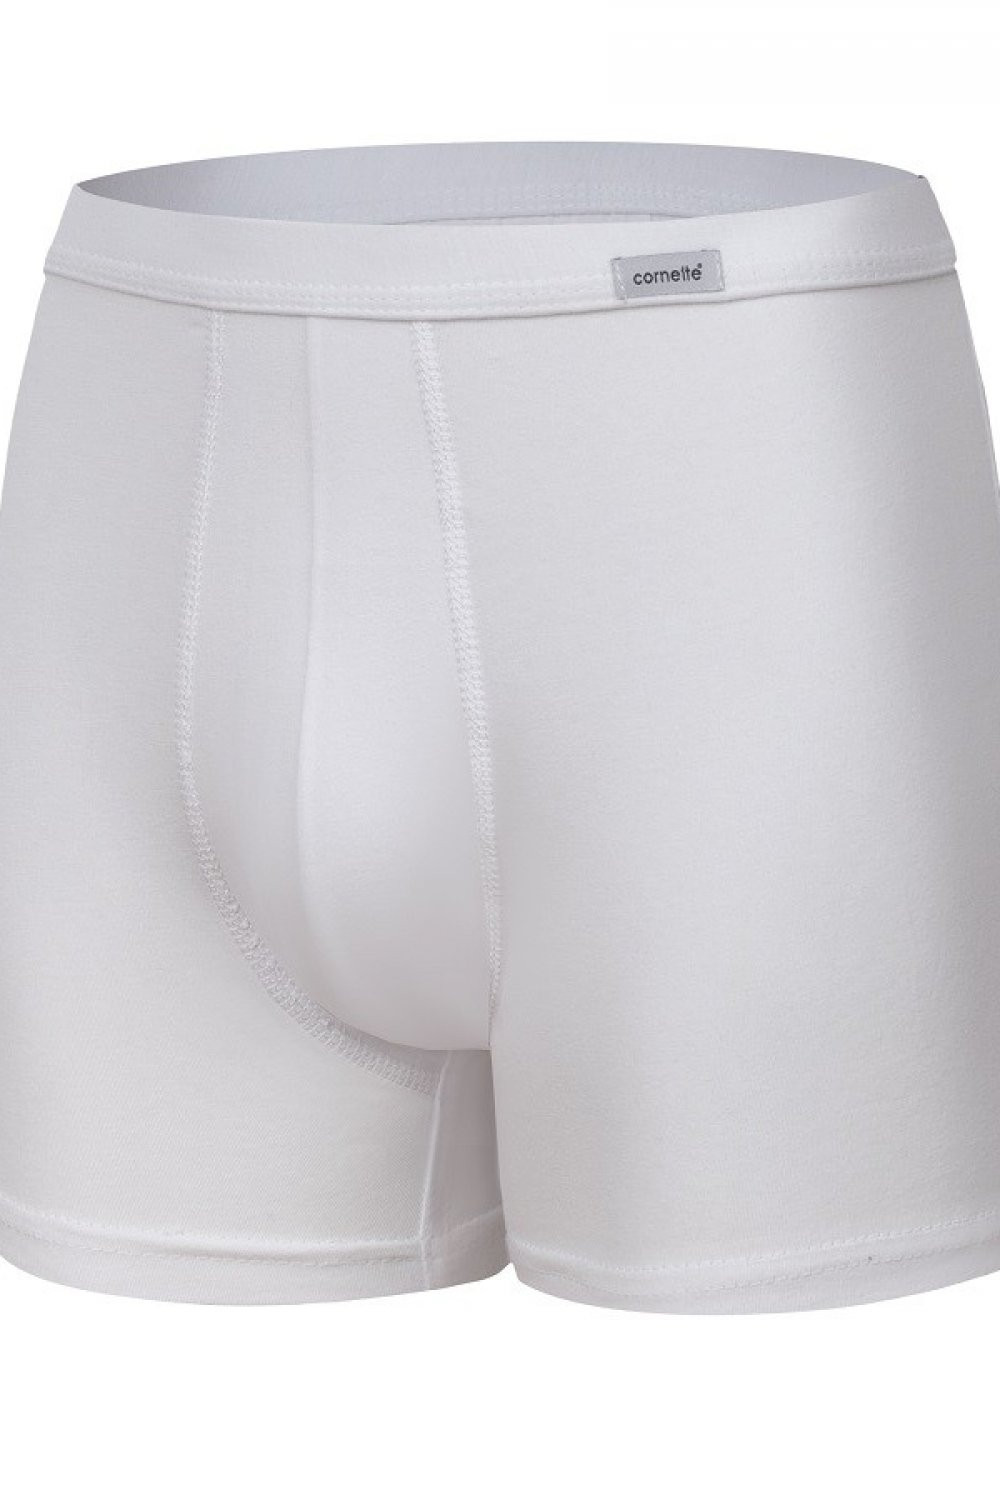 Pánské boxerky 220 white - CORNETTE Barva: Bílá, Velikost: S